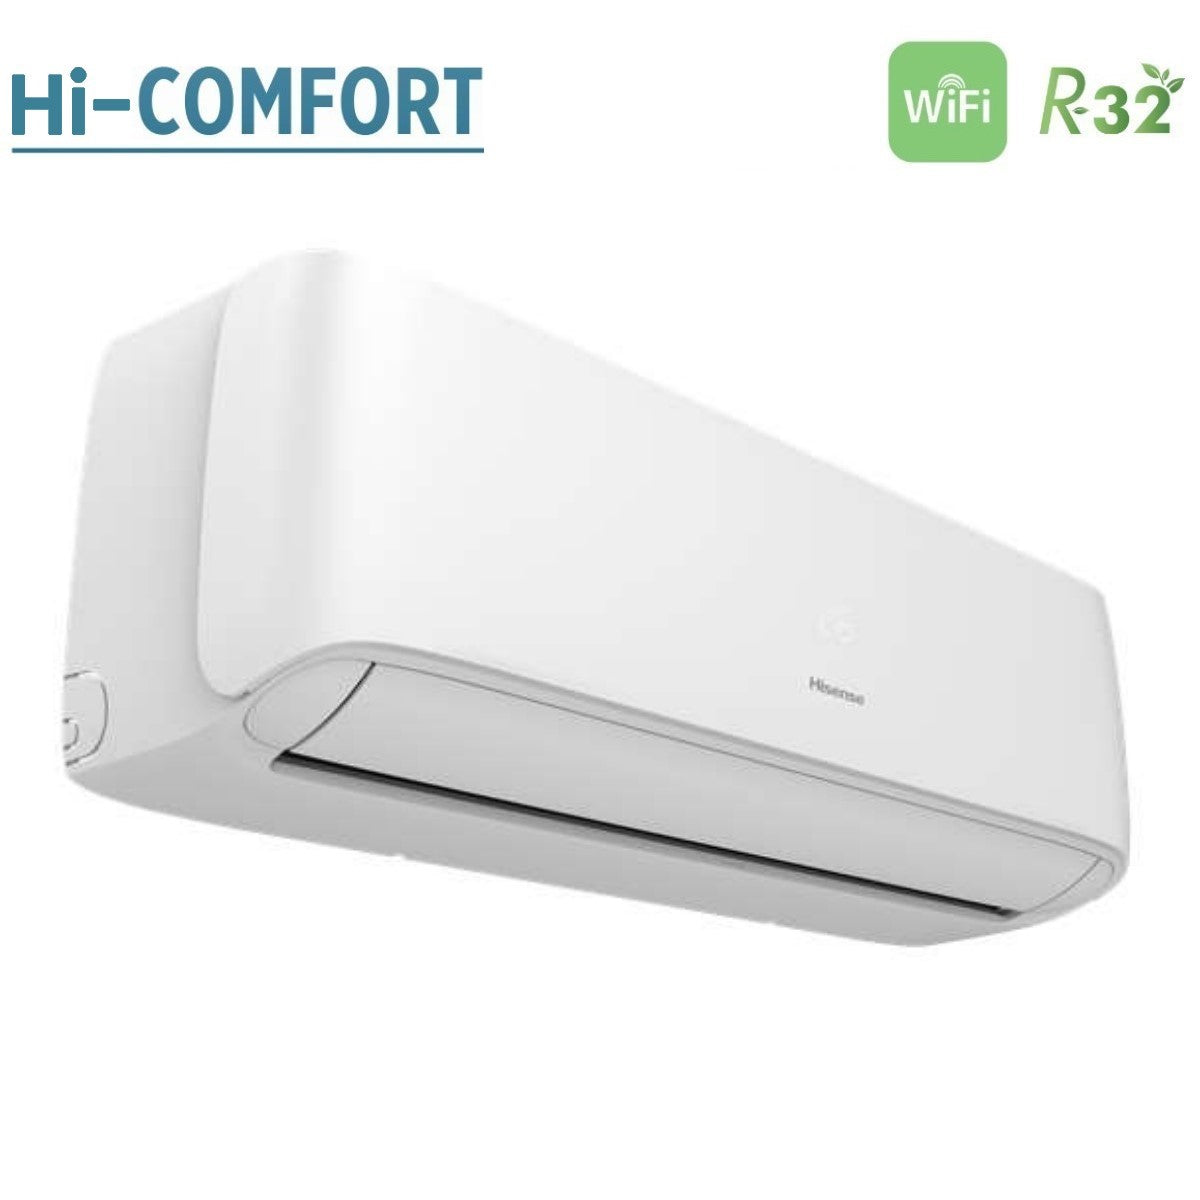 immagine-3-hisense-climatizzatore-condizionatore-hisense-inverter-serie-hi-comfort-18000-btu-cf50bs04g-r-32-wi-fi-integrato-classe-a-novita